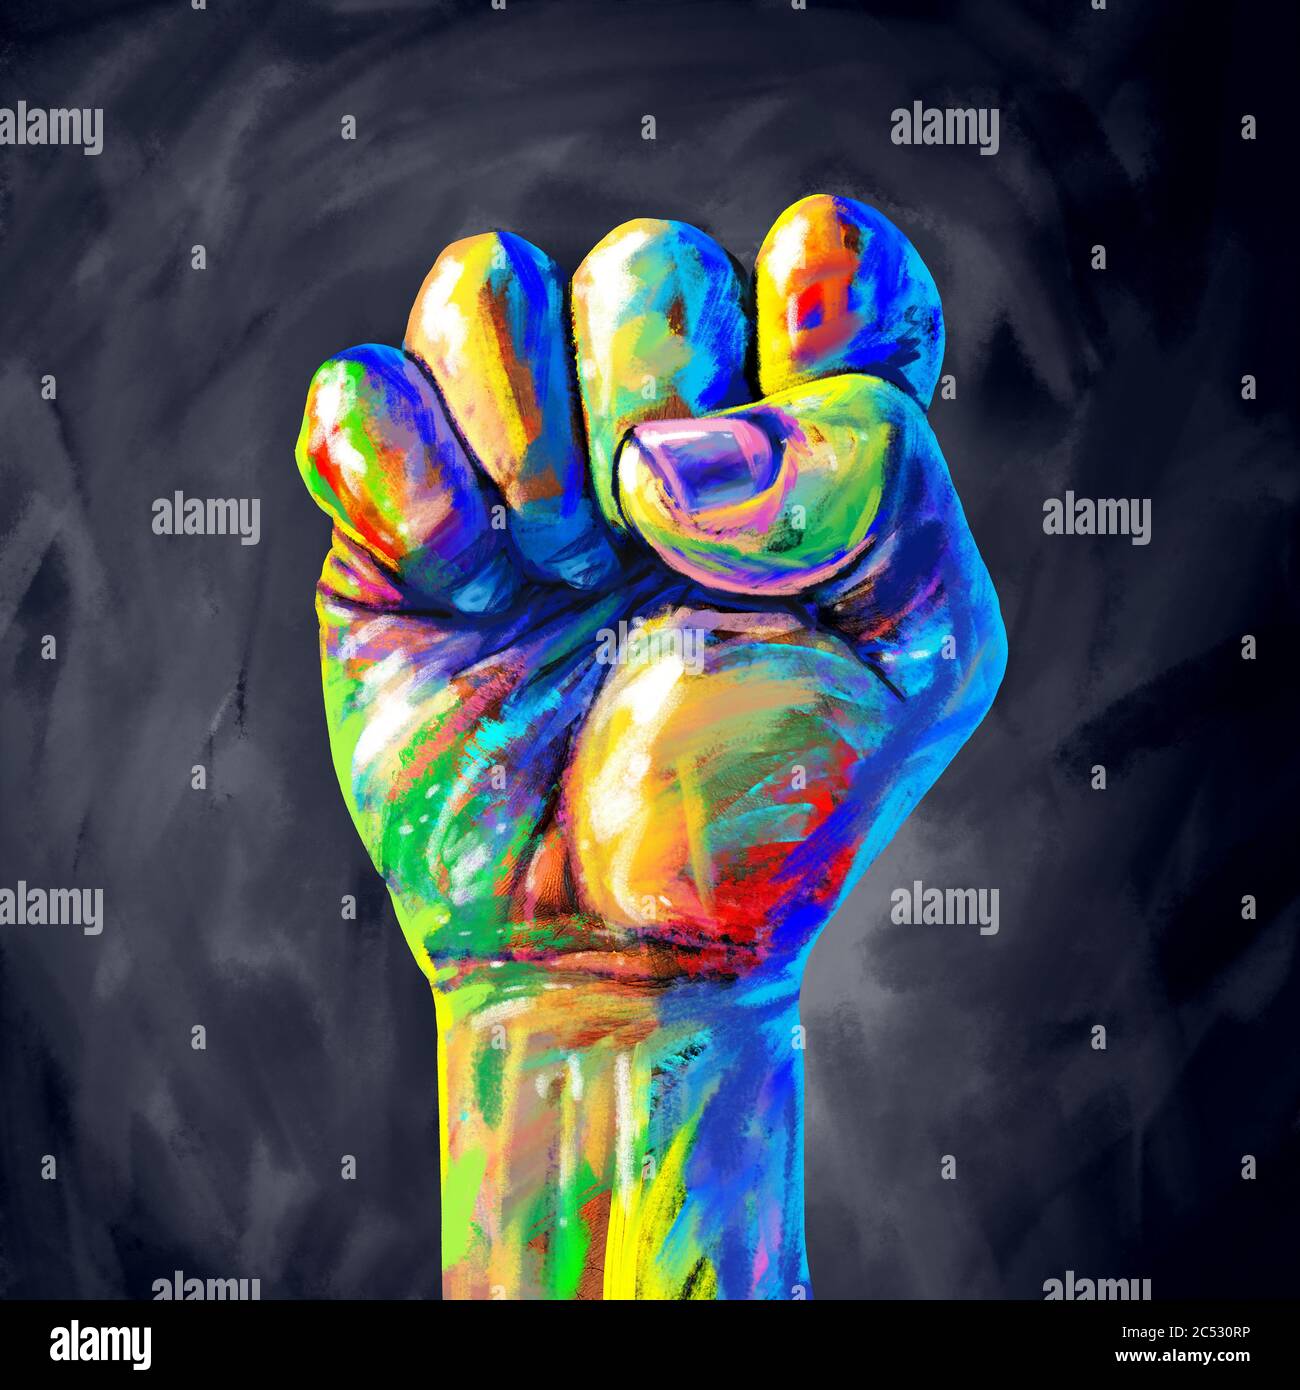 Justicia concepto abstracto como un puño pintado en diversos colores que representan la diversidad y el poder de la comunidad para la igualdad de derechos y la equidad social. Foto de stock